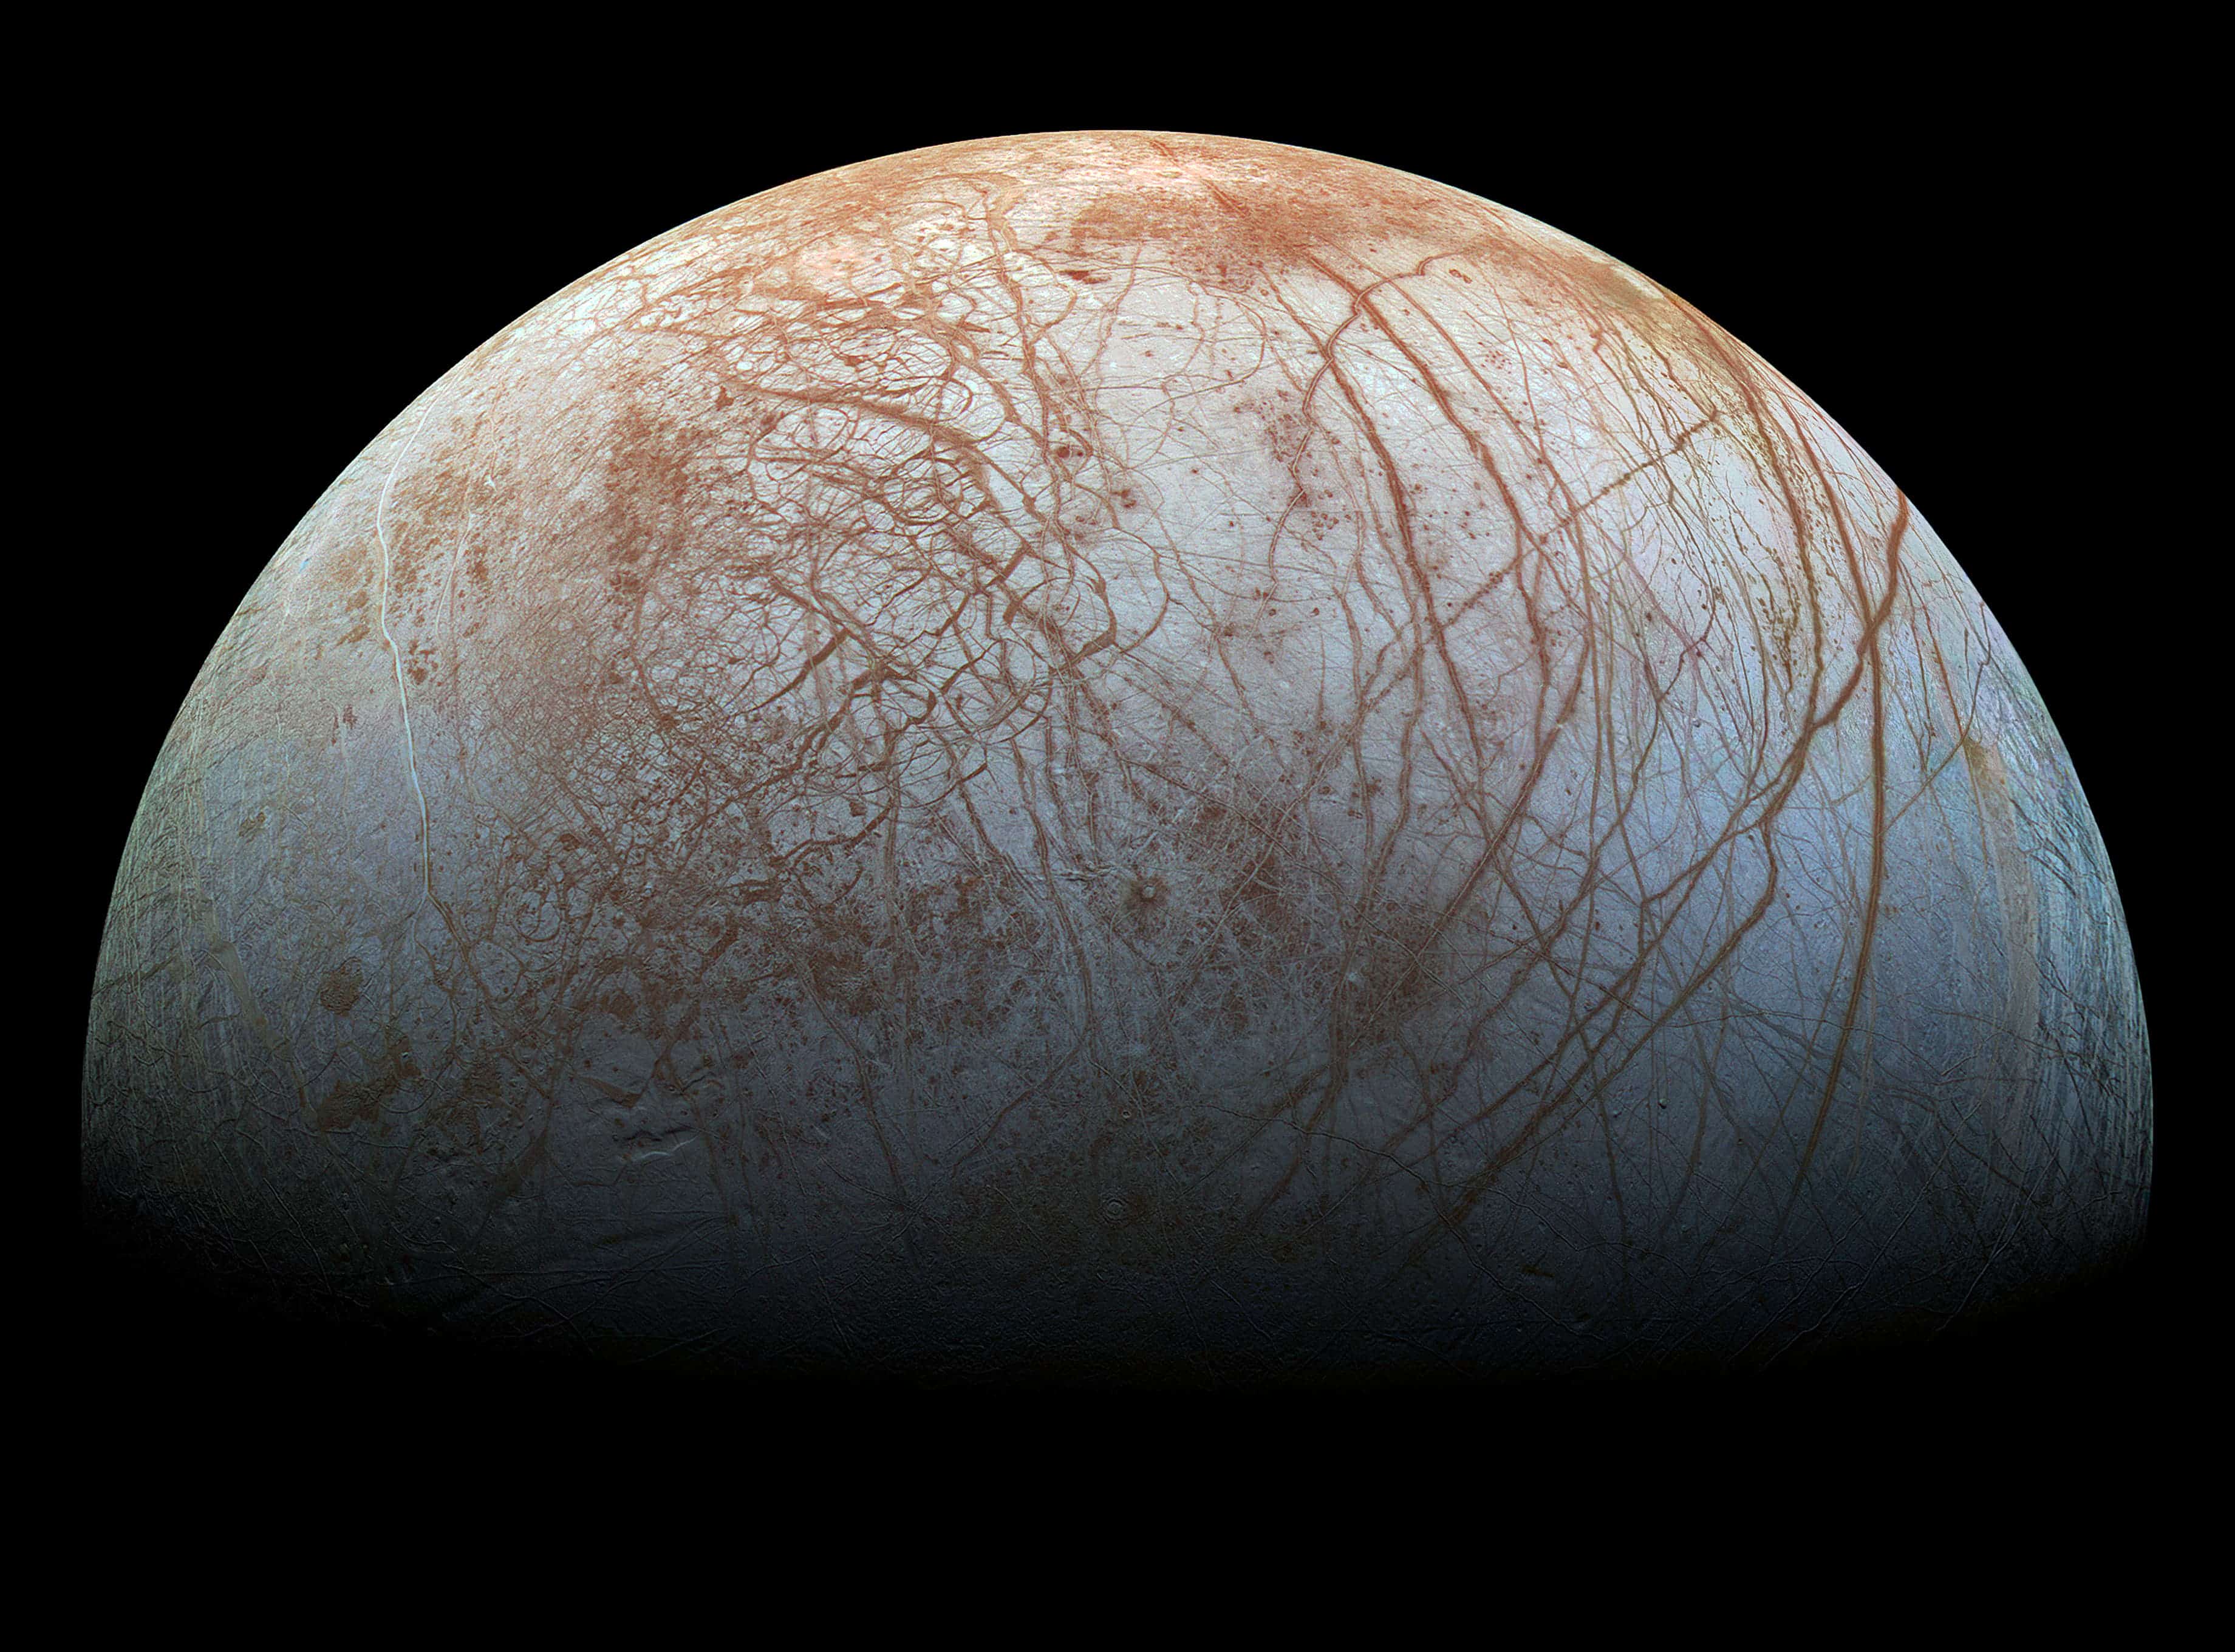 Jupiter's icy moon Europa might have a salty ocean. Image credits: NASA.